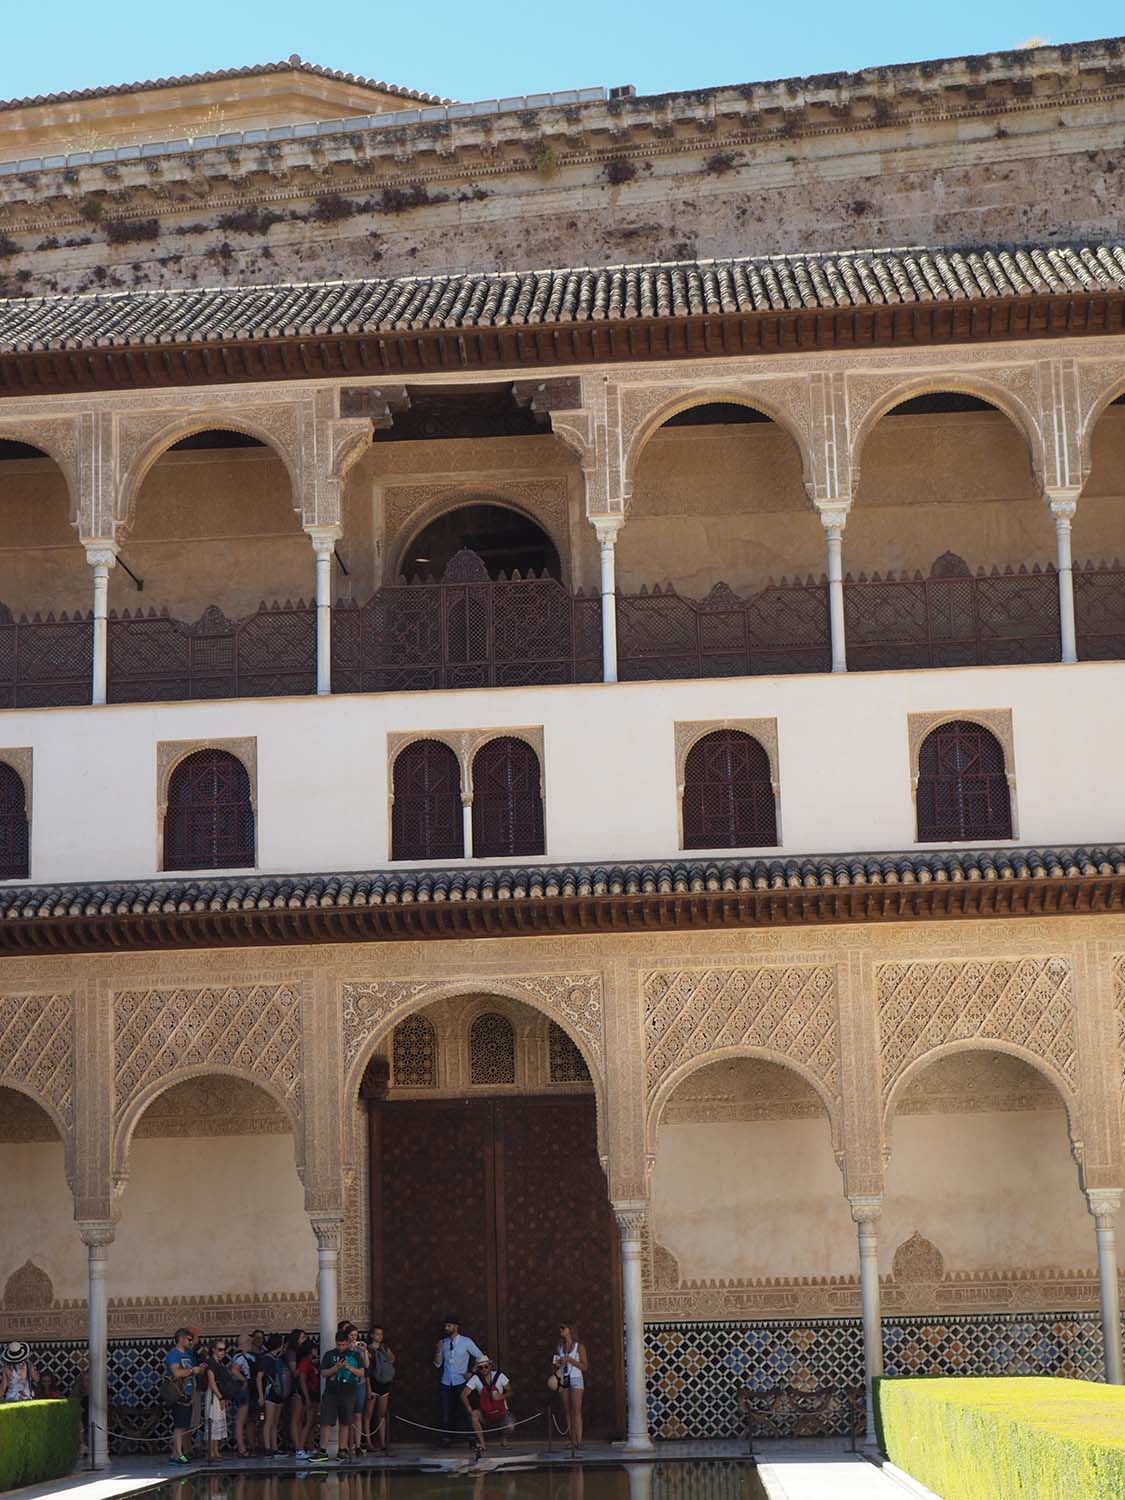 Façade, Palacio de Comares southern pavilion, Patio de los Arrayanes